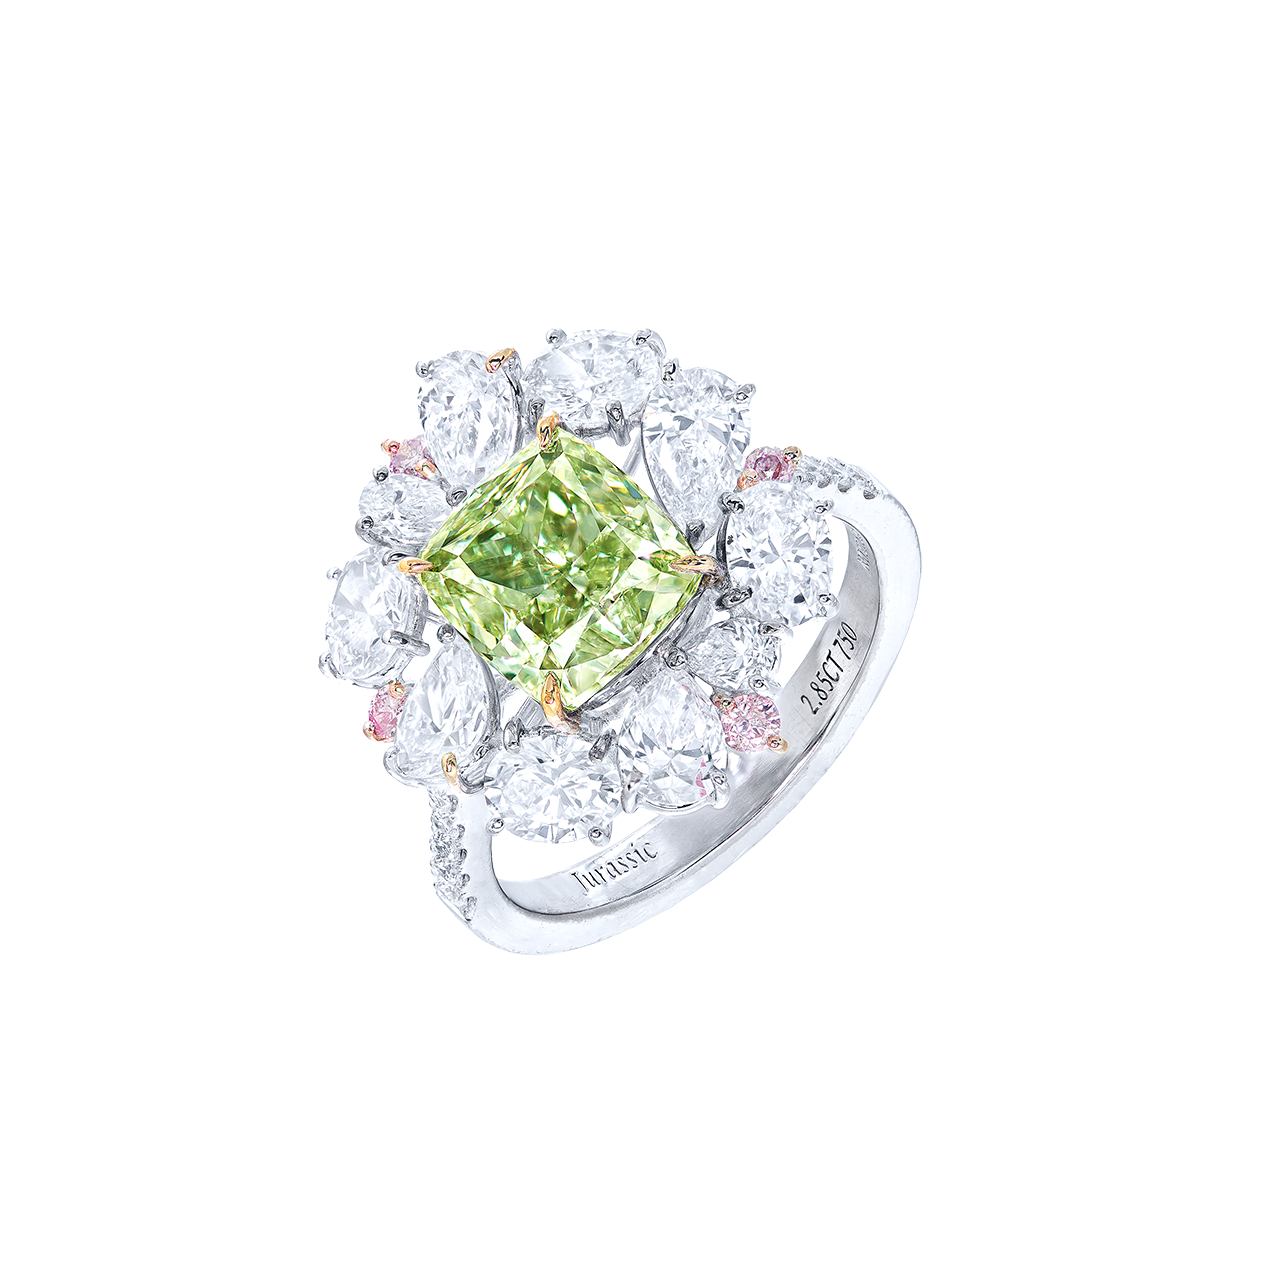 GIA 2.85克拉 灰黃綠彩鑽戒
Fancy Grayish Yellowish Green
Colored Diamond Ring